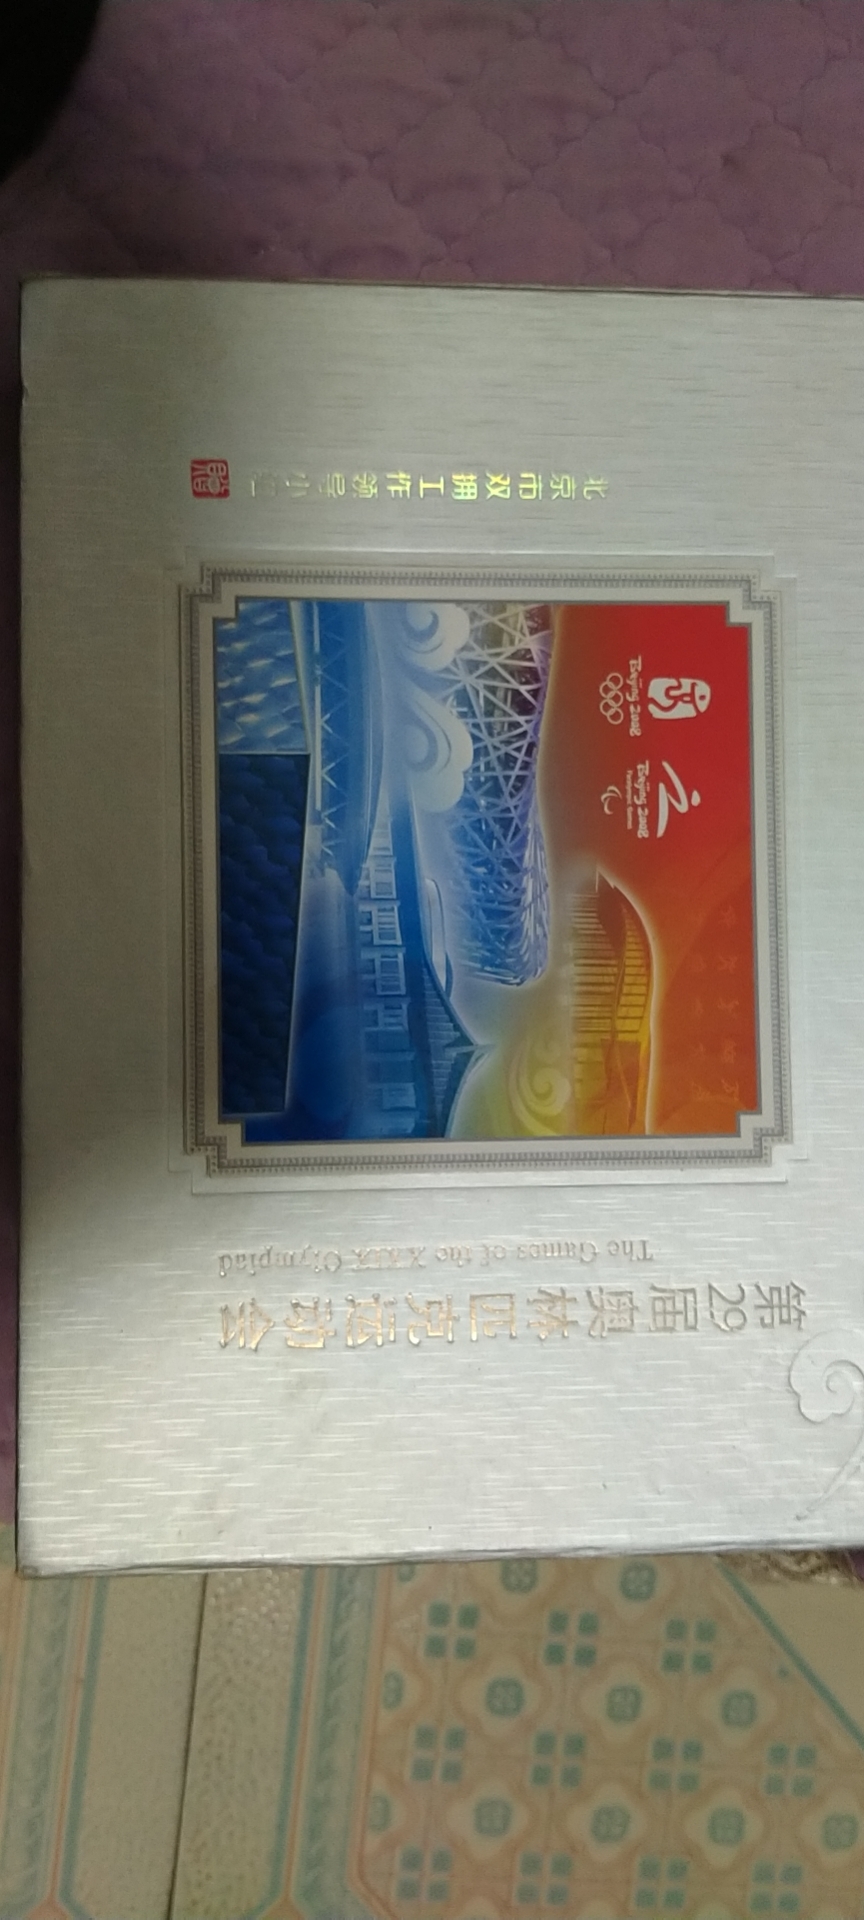 2008奥运纪念邮册图片